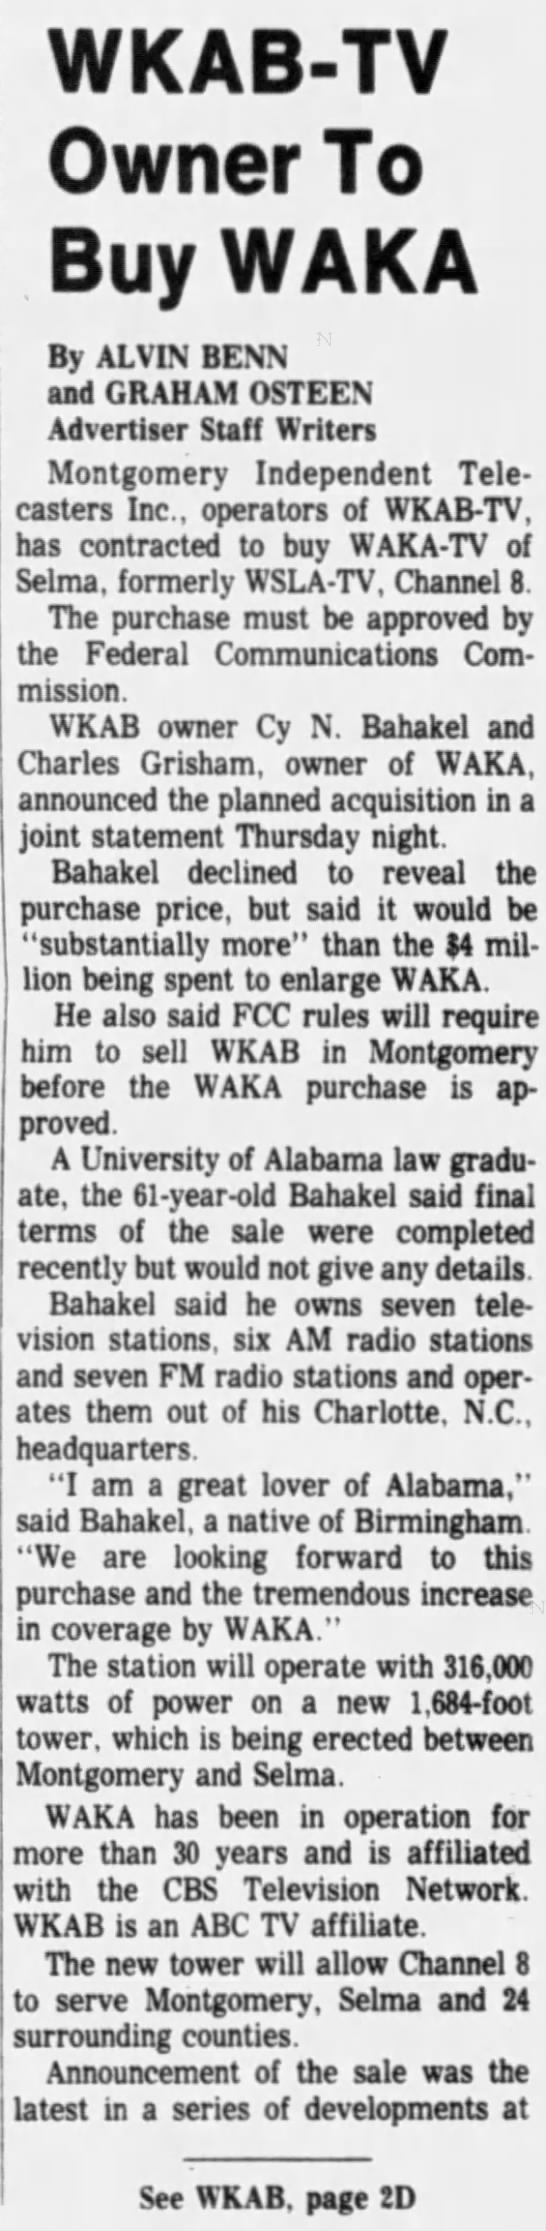 WKAB-TV Owner To Buy WAKA - 